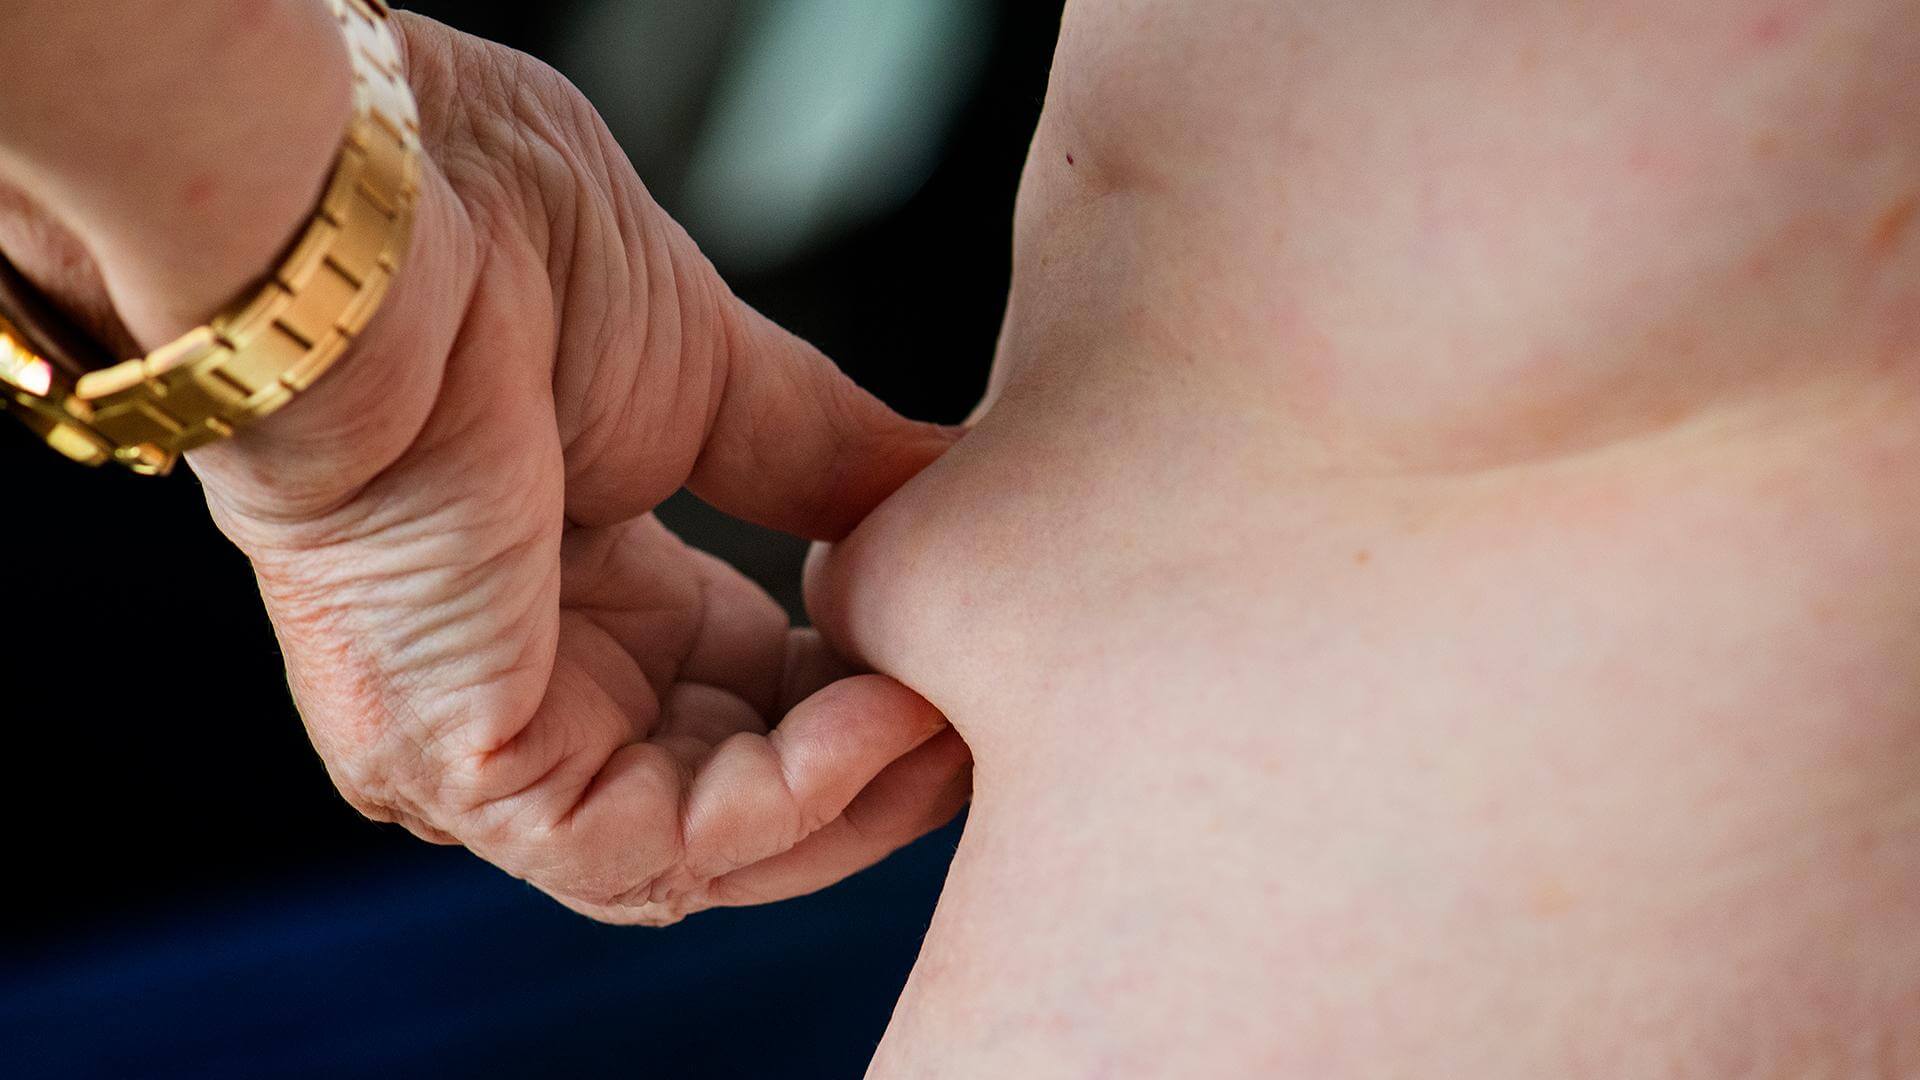 Femme de dos pinçant sa peau pour vérifier les résultats d'une liposuccion